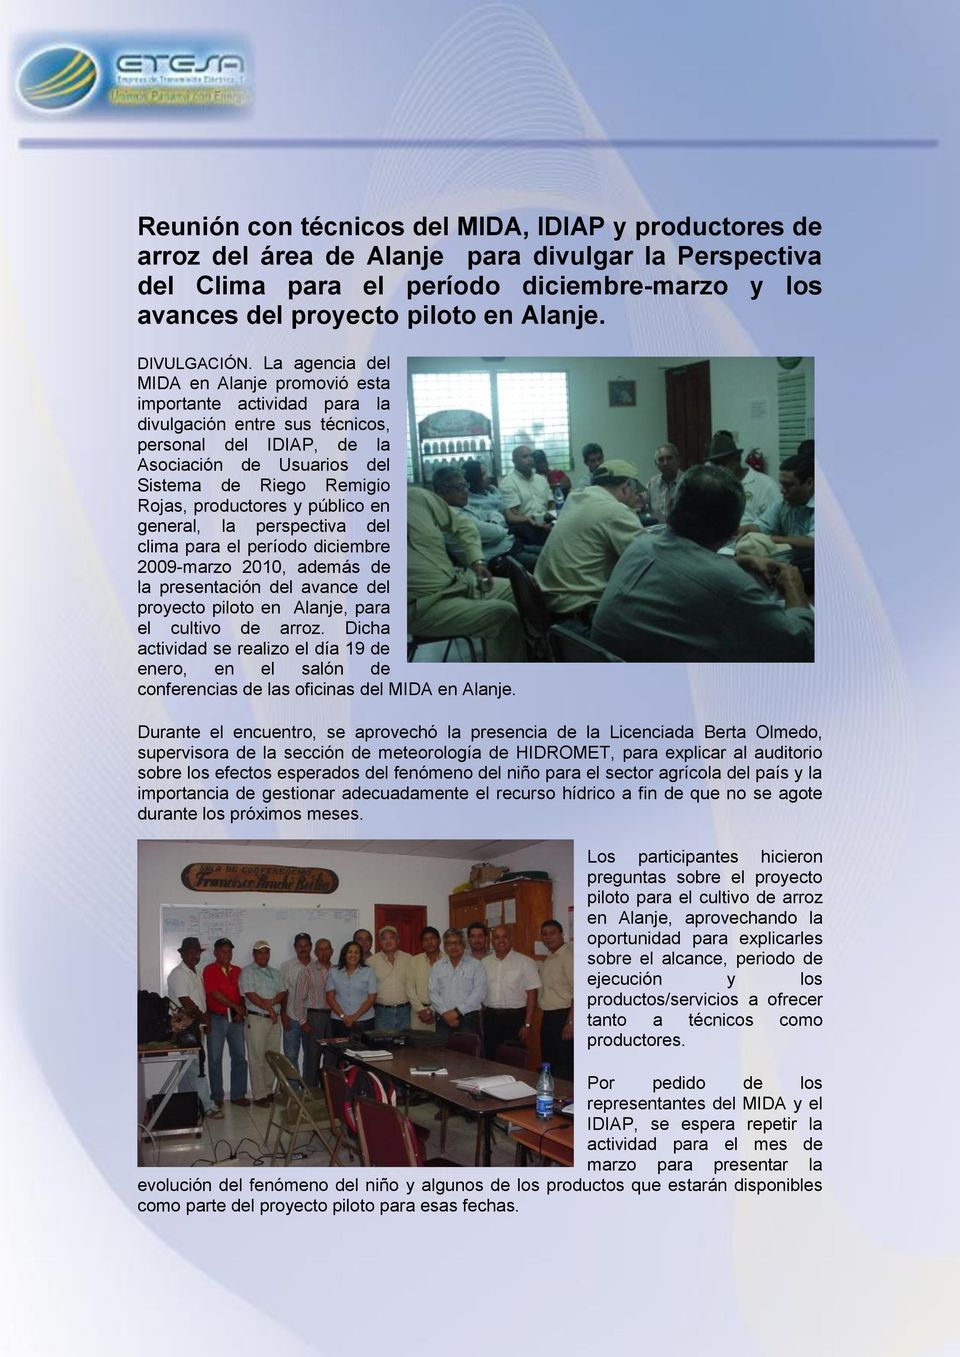 La agencia del MIDA en Alanje promovió esta importante actividad para la divulgación entre sus técnicos, personal del IDIAP, de la Asociación de Usuarios del Sistema de Riego Remigio Rojas,